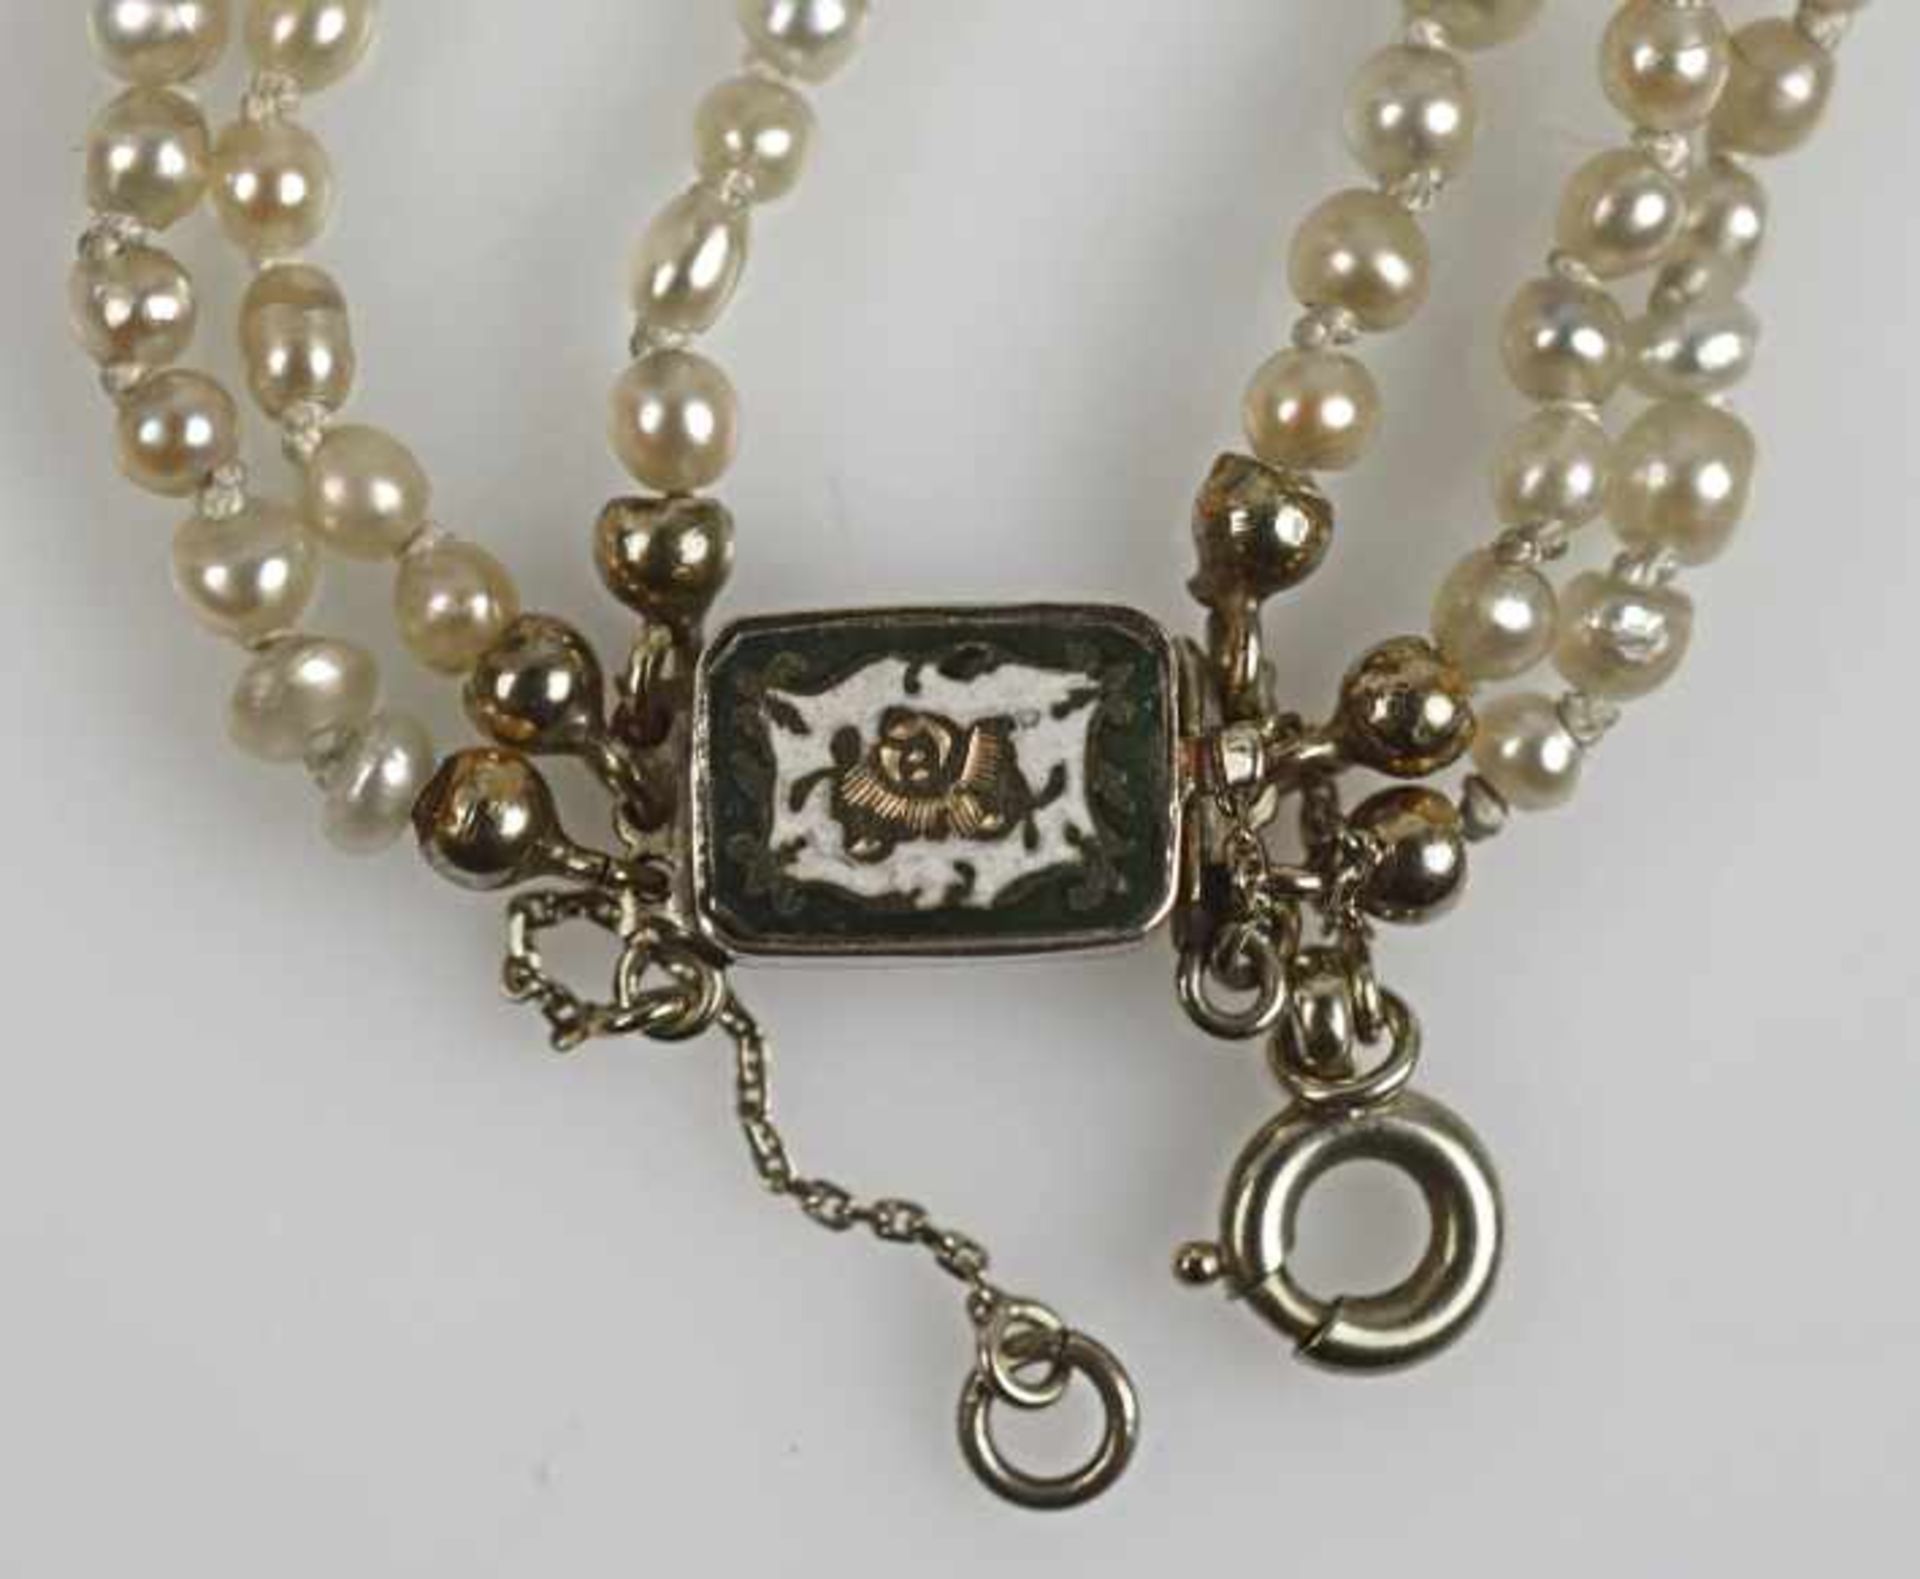 COLLIER Orientperlen in 3 Reihen, 2-4mm, gesamt um 350 Perlen, Kastenschloß mit Emaildekor und - Bild 3 aus 3